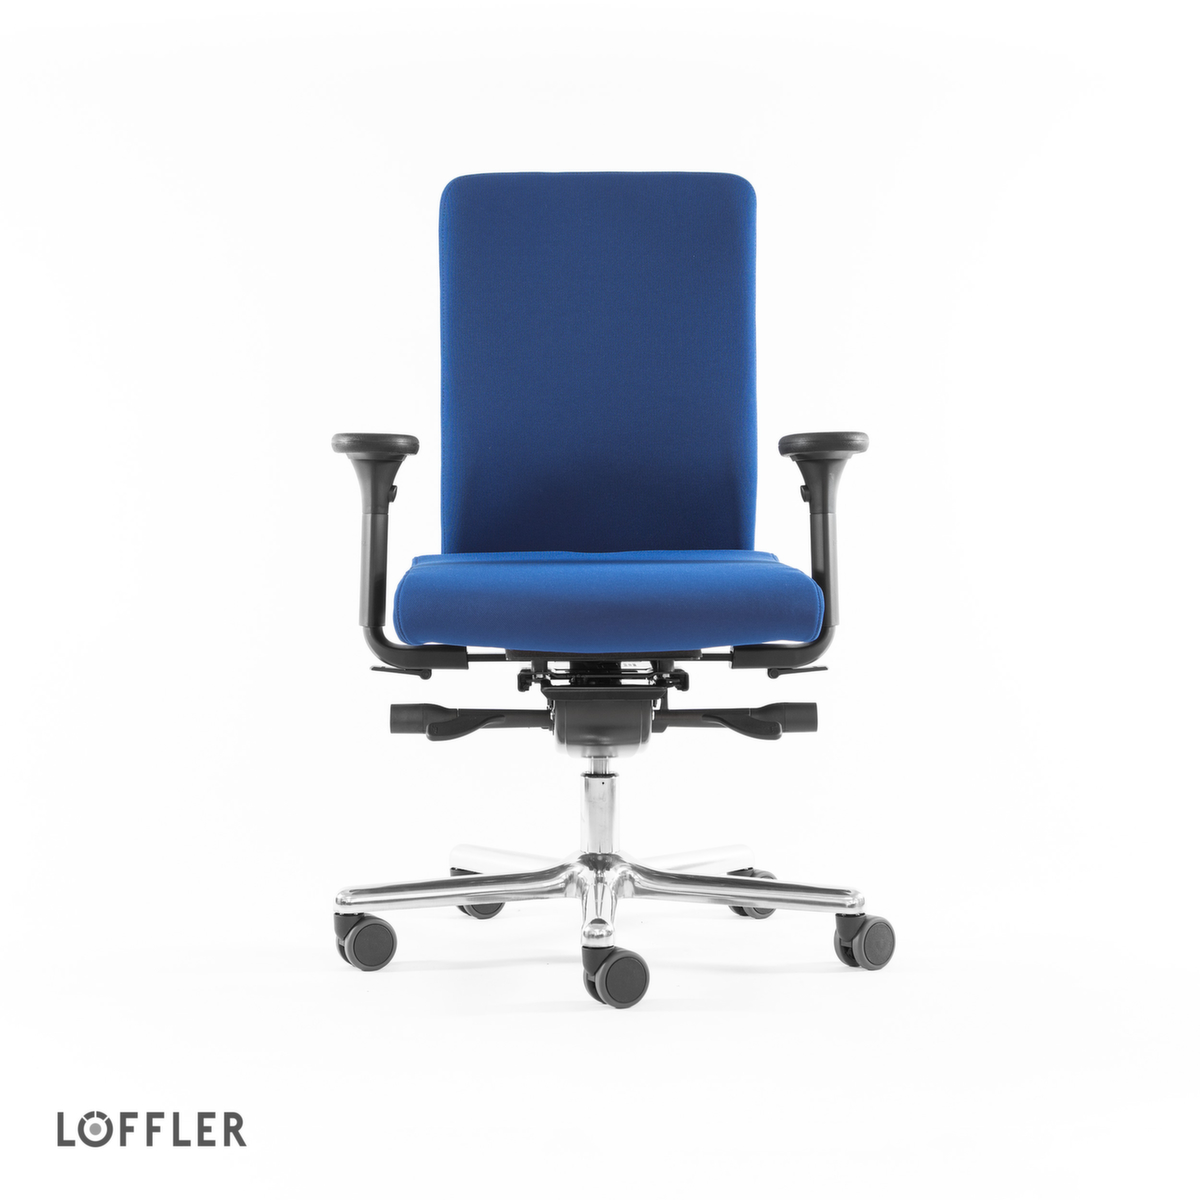 Löffler Bürodrehstuhl mit viskoelastischem Sitz, blau Standard 2 ZOOM